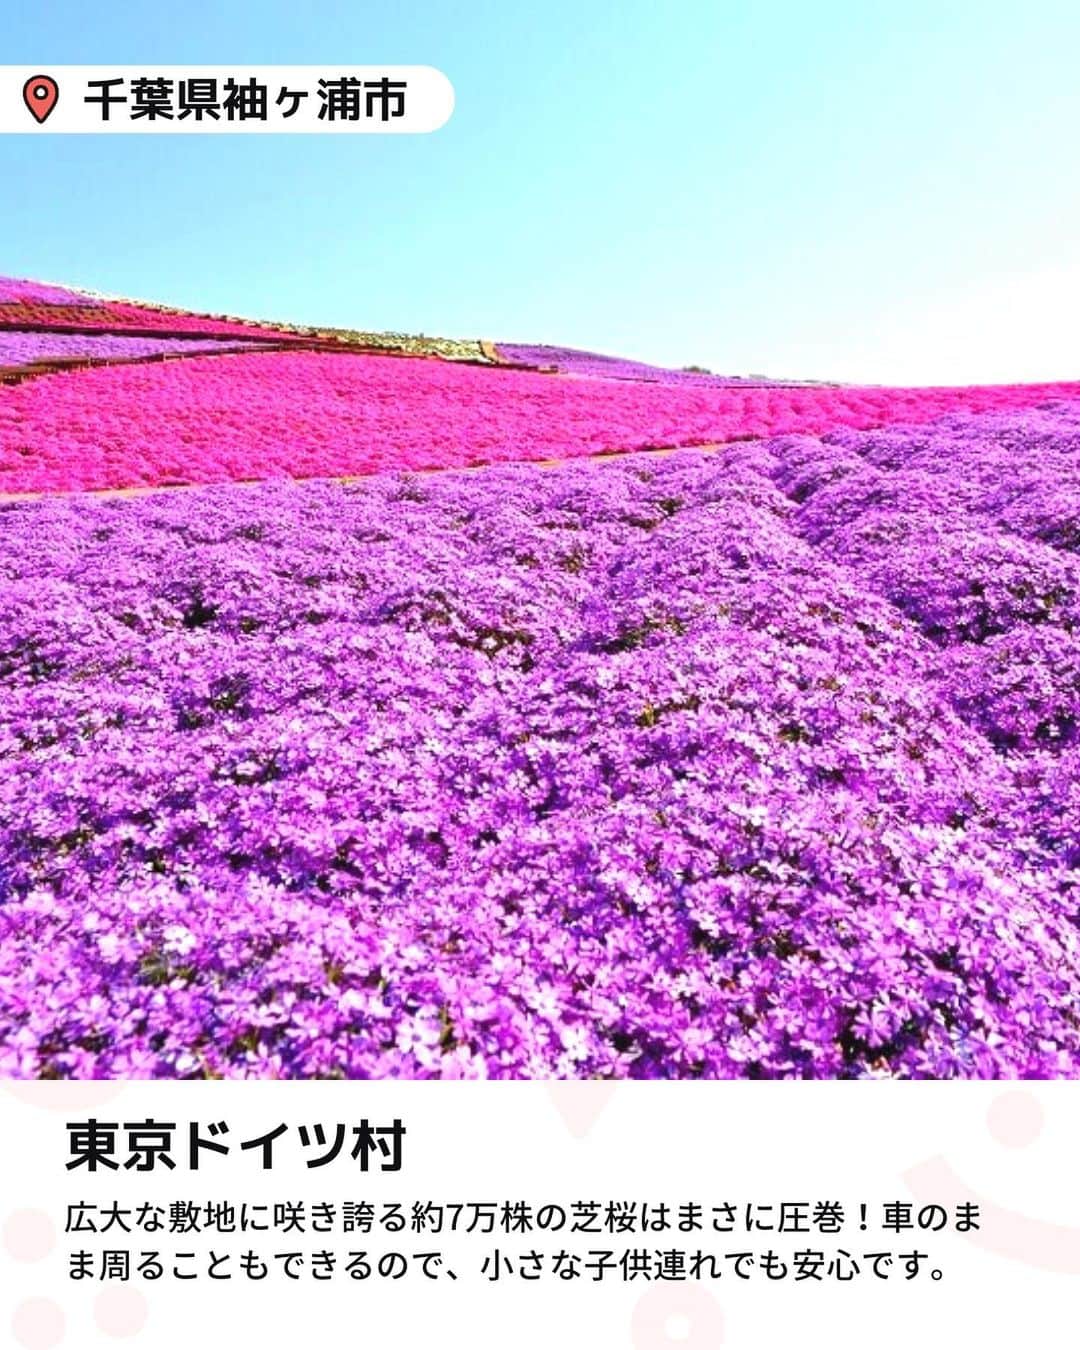 iko-yo（いこーよオフィシャル）さんのインスタグラム写真 - (iko-yo（いこーよオフィシャル）Instagram)「今回ピックアップしたのは「関東 おすすめ大規模芝桜スポット6選」 ーーーーーーーーーーーーーーーーーー  📍千葉県袖ケ浦市 【東京ドイツ村】 「東京ドイツ村」の芝桜は、関東最大級の面積を誇ります。5万平方メートルという広大な敷地に咲き誇る約7万株の芝桜はまさに圧巻！　 広大な園内を歩いて観賞するほか、車に乗ったまま周ることもできるので、小さな子供連れでも安心です。さらに、アスレチックや動物園など多彩な施設もあり、1日中遊ぶことができますよ。  📍千葉県千葉市 【富田さとにわ耕園】 12万株の芝桜をはじめ、澄んだブルーが美しいネモフィラや、爽やかなオレンジ色のポピーなど、春の花々が5月頃まで楽しめます。色とりどりの花々が咲き誇る花畑はSNS映え間違いなし！　入園無料なのもうれしいポイントです。  📍埼玉県秩父市 【羊山公園　芝桜の丘】 4月上旬から5月上旬の期間に、40万株以上の芝桜が楽しめます。9種類の芝桜が美しいデザインで植裁された花畑は写真映え抜群！また、「羊山公園」の名前の由来になったといわれる「羊とのふれあい牧場」やアスレチック設備が充実した「わんぱく広場」もあり、子供も思い切り楽しめます。  📍 栃木県芳賀郡市貝町 【市貝町芝ざくら公園】 八溝の山々の緑に囲まれ、隣に芳那の水晶湖を持つ自然豊かなロケーションが魅力の公園。2.4ヘクタールの広大な敷地を誇り、約25万本の芝桜の風景が一望できます。  📍群馬県高崎市 【みさと芝桜公園】 2.9ヘクタールの敷地内に約26万株の芝桜が咲き誇ります。芝桜の丘の中心には、七夕伝説の織姫が置き忘れた桃色の羽衣をイメージした赤、白、ピンクの芝桜を帯状にデザイン。幻想的な風景は家族の記念写真スポットとしてもぴったりです！  📍群馬県太田市 【八王子山公園（北部運動公園）】 入園無料！毎年春に、桜や芝桜、ネモフィラ、ツツジなどが咲き誇る花の名所として知られる公園です。4月下旬頃には、30万株におよぶ芝桜の絨毯が見渡す限り広がります。  ※2023年4月17日時点の情報です。 最新の情報は公式HPや「いこーよ」サイトでご確認ください。 ーーーーーーーーーーーーーーーーーーー おでかけ情報量は日本最大級！ 子どもとお出かけ情報サイト「いこーよ」 「親子でおでかけしたい場所」をご紹介させていただいています！  お子さんとのおでかけの思い出の写真を、このアカウントをフォローの上#いこーよ をつけてぜひ投稿してください。魅力的な写真は、いこーよ公式SNSで紹介させていただきます！  募集中タグ＃いこーよ  「子どもと行きたい！」と思ったら保存が便利！ プロフィールのURLから「いこーよ」のサイトに行くと、他の投稿やオトクな情報などが載っています♪ ☞ @ikoyo_odekake  #いこーよ #お出かけ #おでかけ #お出かけスポット #子連れ #こどものいる暮らし #子連れスポット #いこーよお出かけ部 #千葉ママ #千葉観光 #千葉旅行 #埼玉ママ #埼玉旅行 #埼玉観光 #群馬ママ #群馬旅行 #群馬観光 #栃木ママ #栃木旅行 #栃木観光 #東京ドイツ村 #富田さとにわ耕園 #羊山公園 #芝桜の丘 #市貝町芝ざくら公園 #みさと芝桜公園 #八王子山公園 #芝桜 #芝ざくら」4月18日 22時49分 - ikoyo_odekake